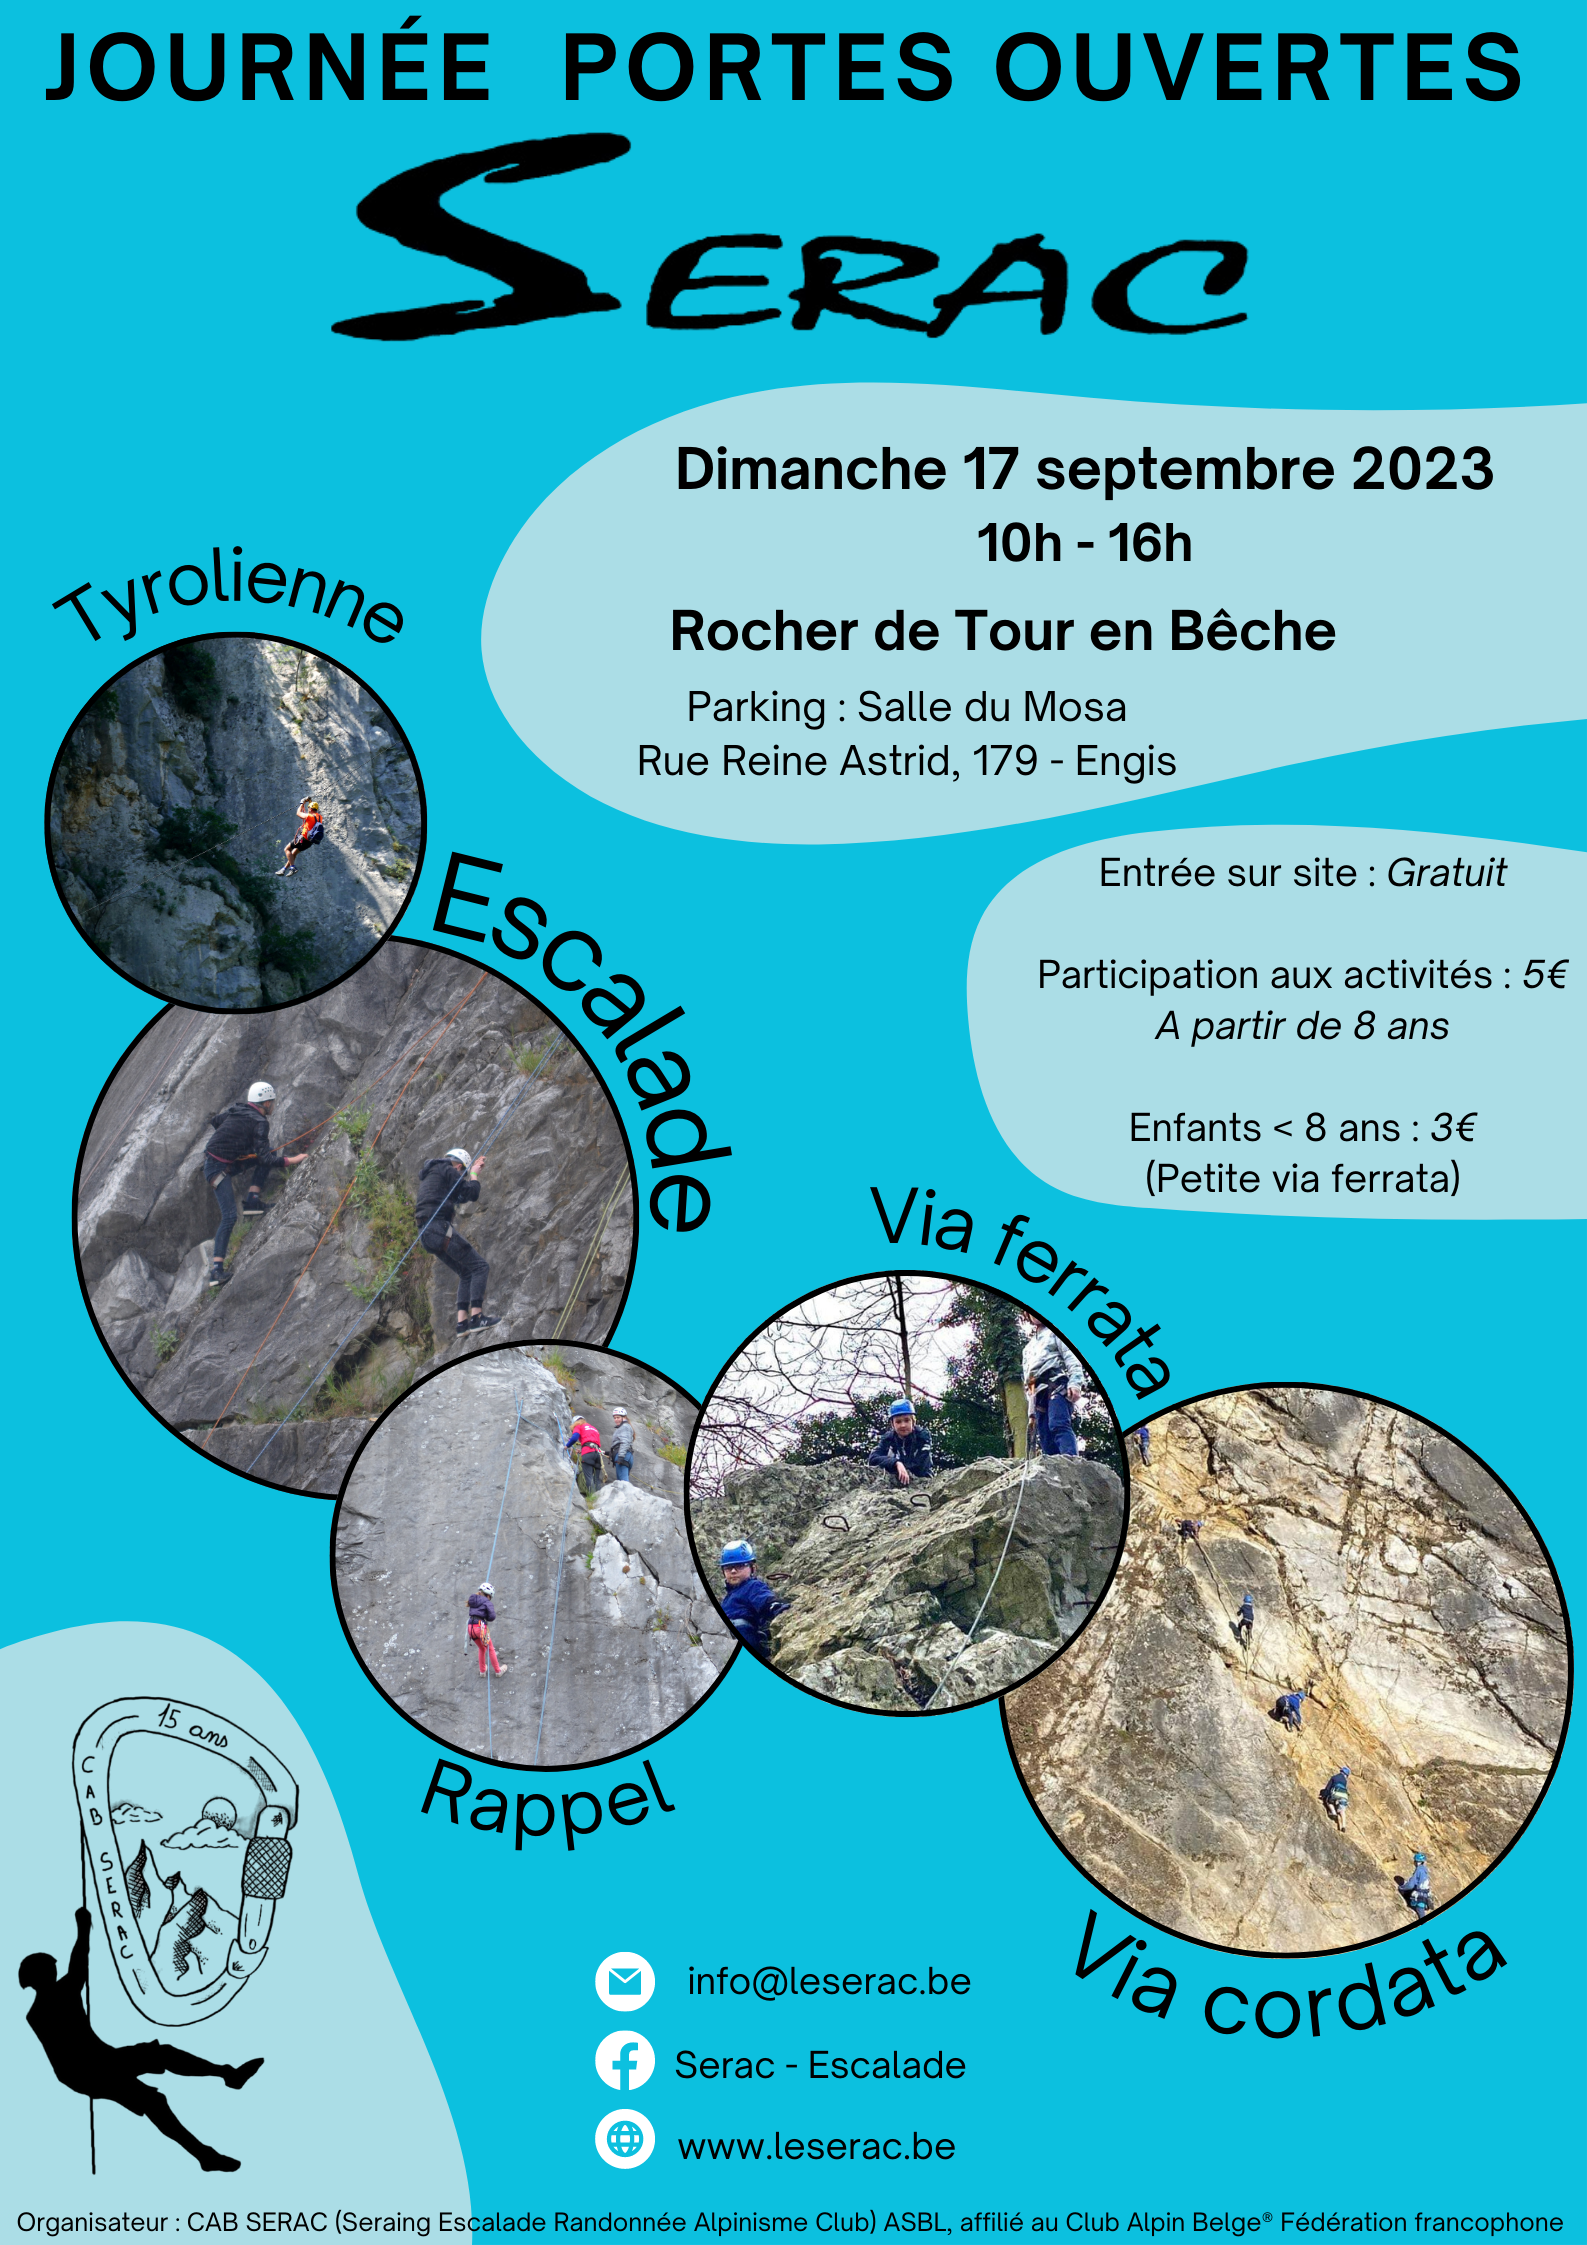 Dimanche 17 septembre 2023 de 10h à 16h. Rocher de Tour en Bêche (Engis) - Découverte de l'escalade en milieu naturel, Via ferrata, Via cordata, Rappel, Tyrolienne, Parcours Vita.